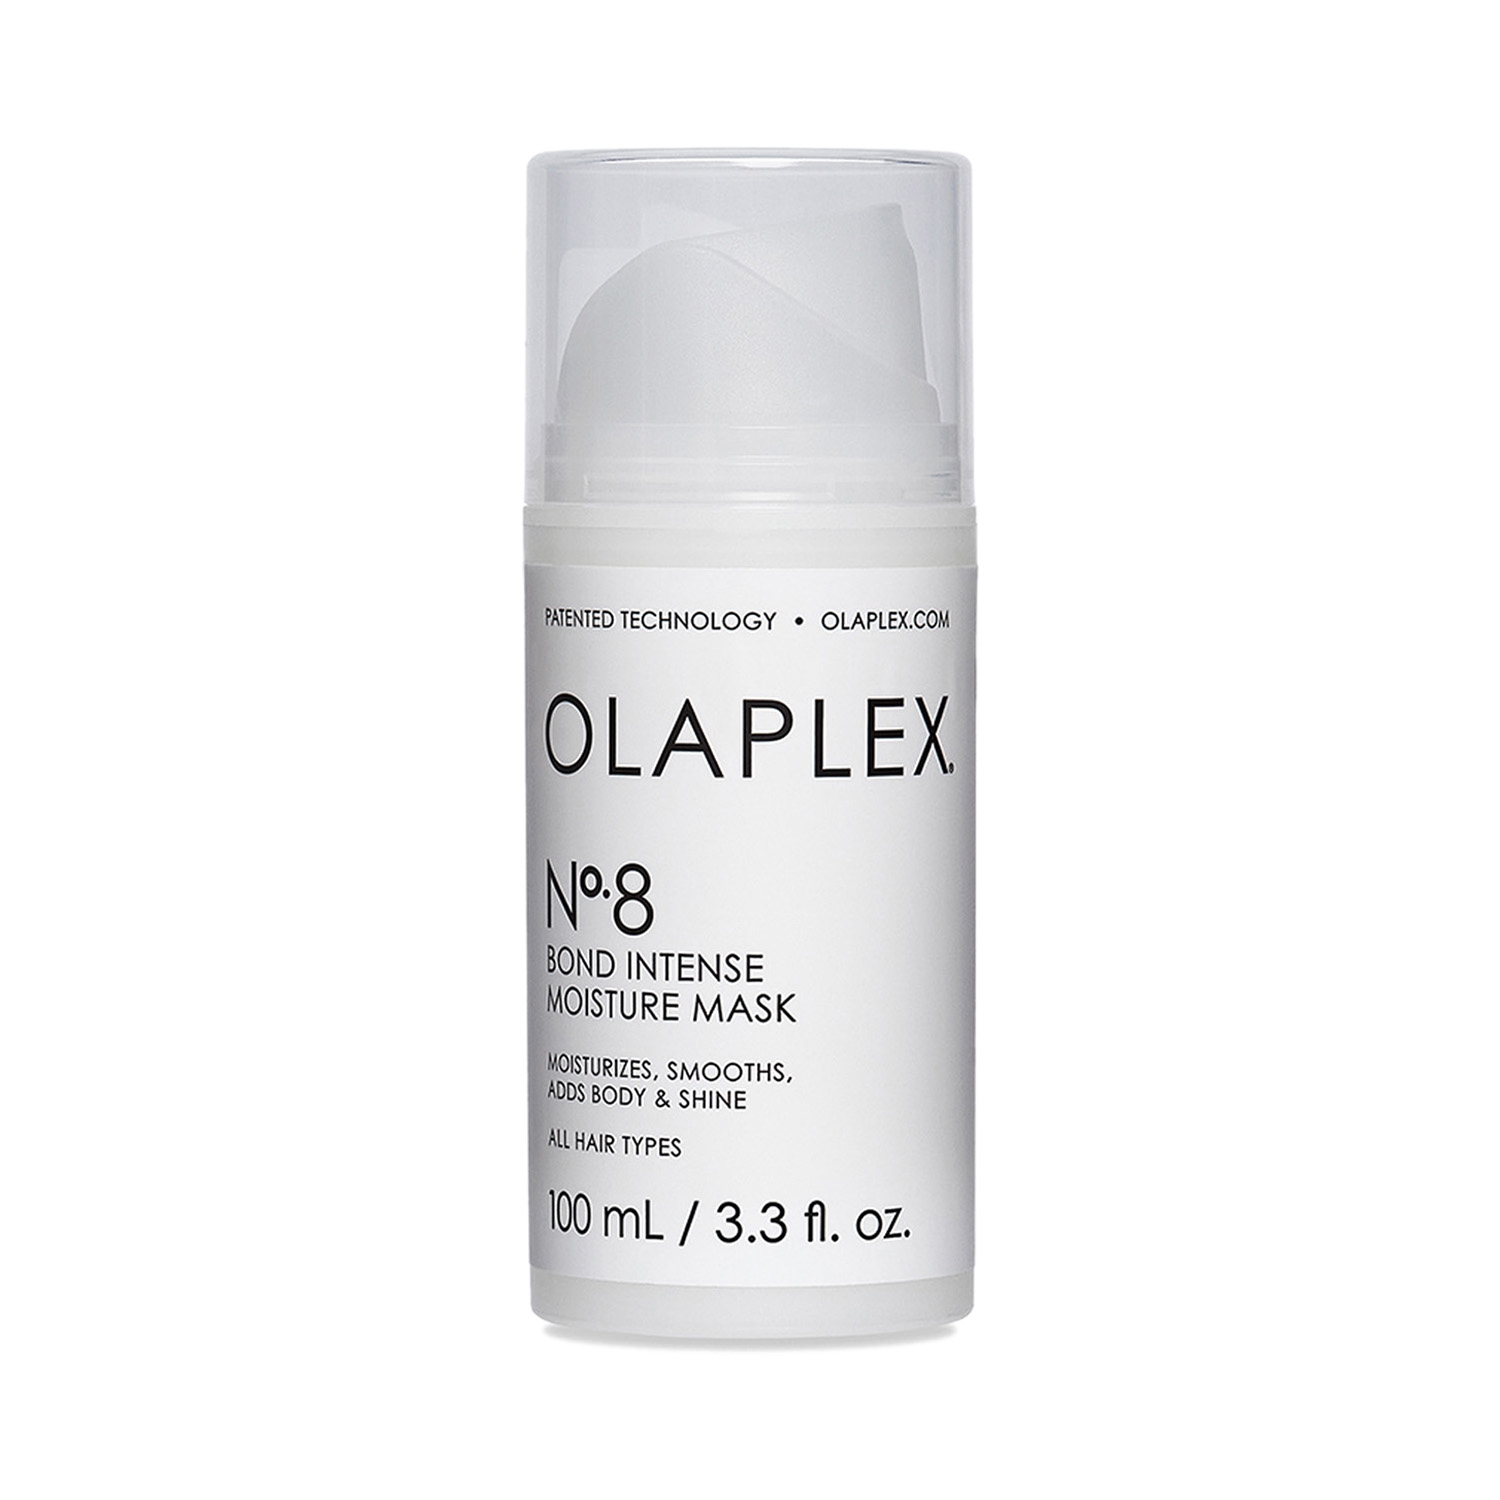 Olaplex | Olaplex No.8 Bond Intense Moisture Mask (100g)